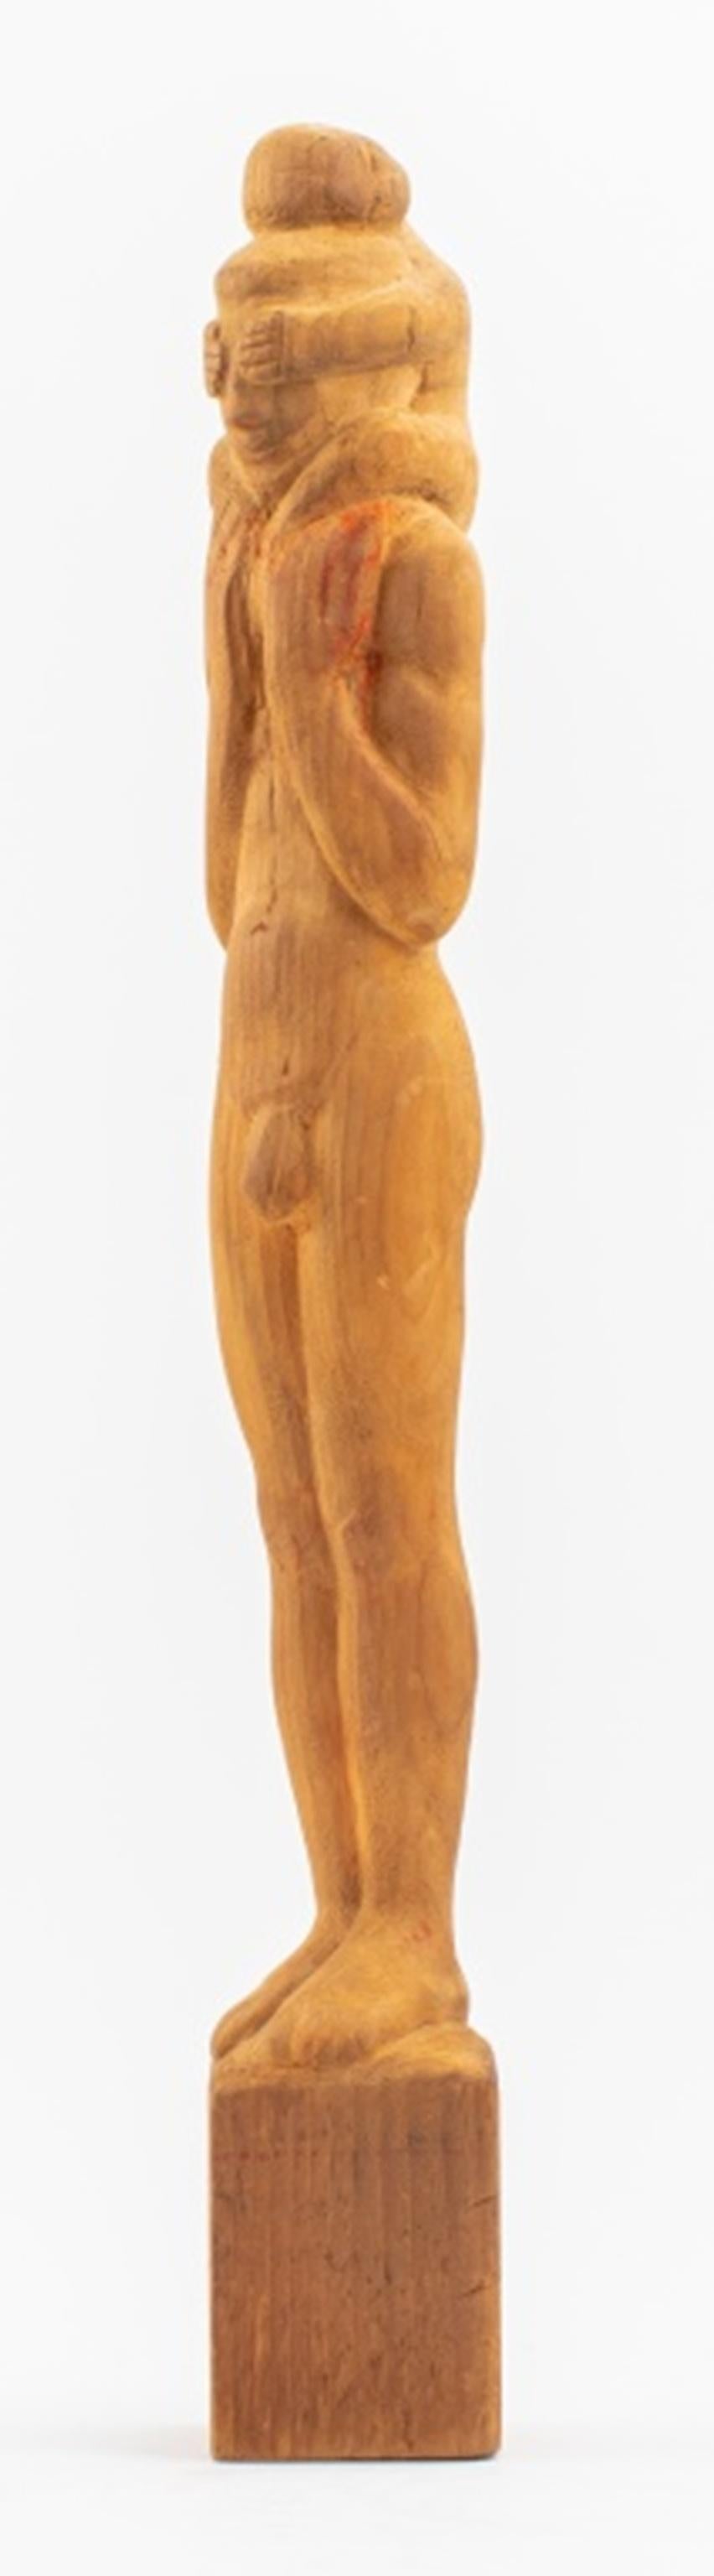 Statue sculptée en bois Americana Folk Art représentant un homme nu debout avec un enfant sur ses épaules lui couvrant les yeux, apparemment non signée, première moitié du vingtième siècle. Objet vintage en très bon état. 

Concessionnaire : S138XX